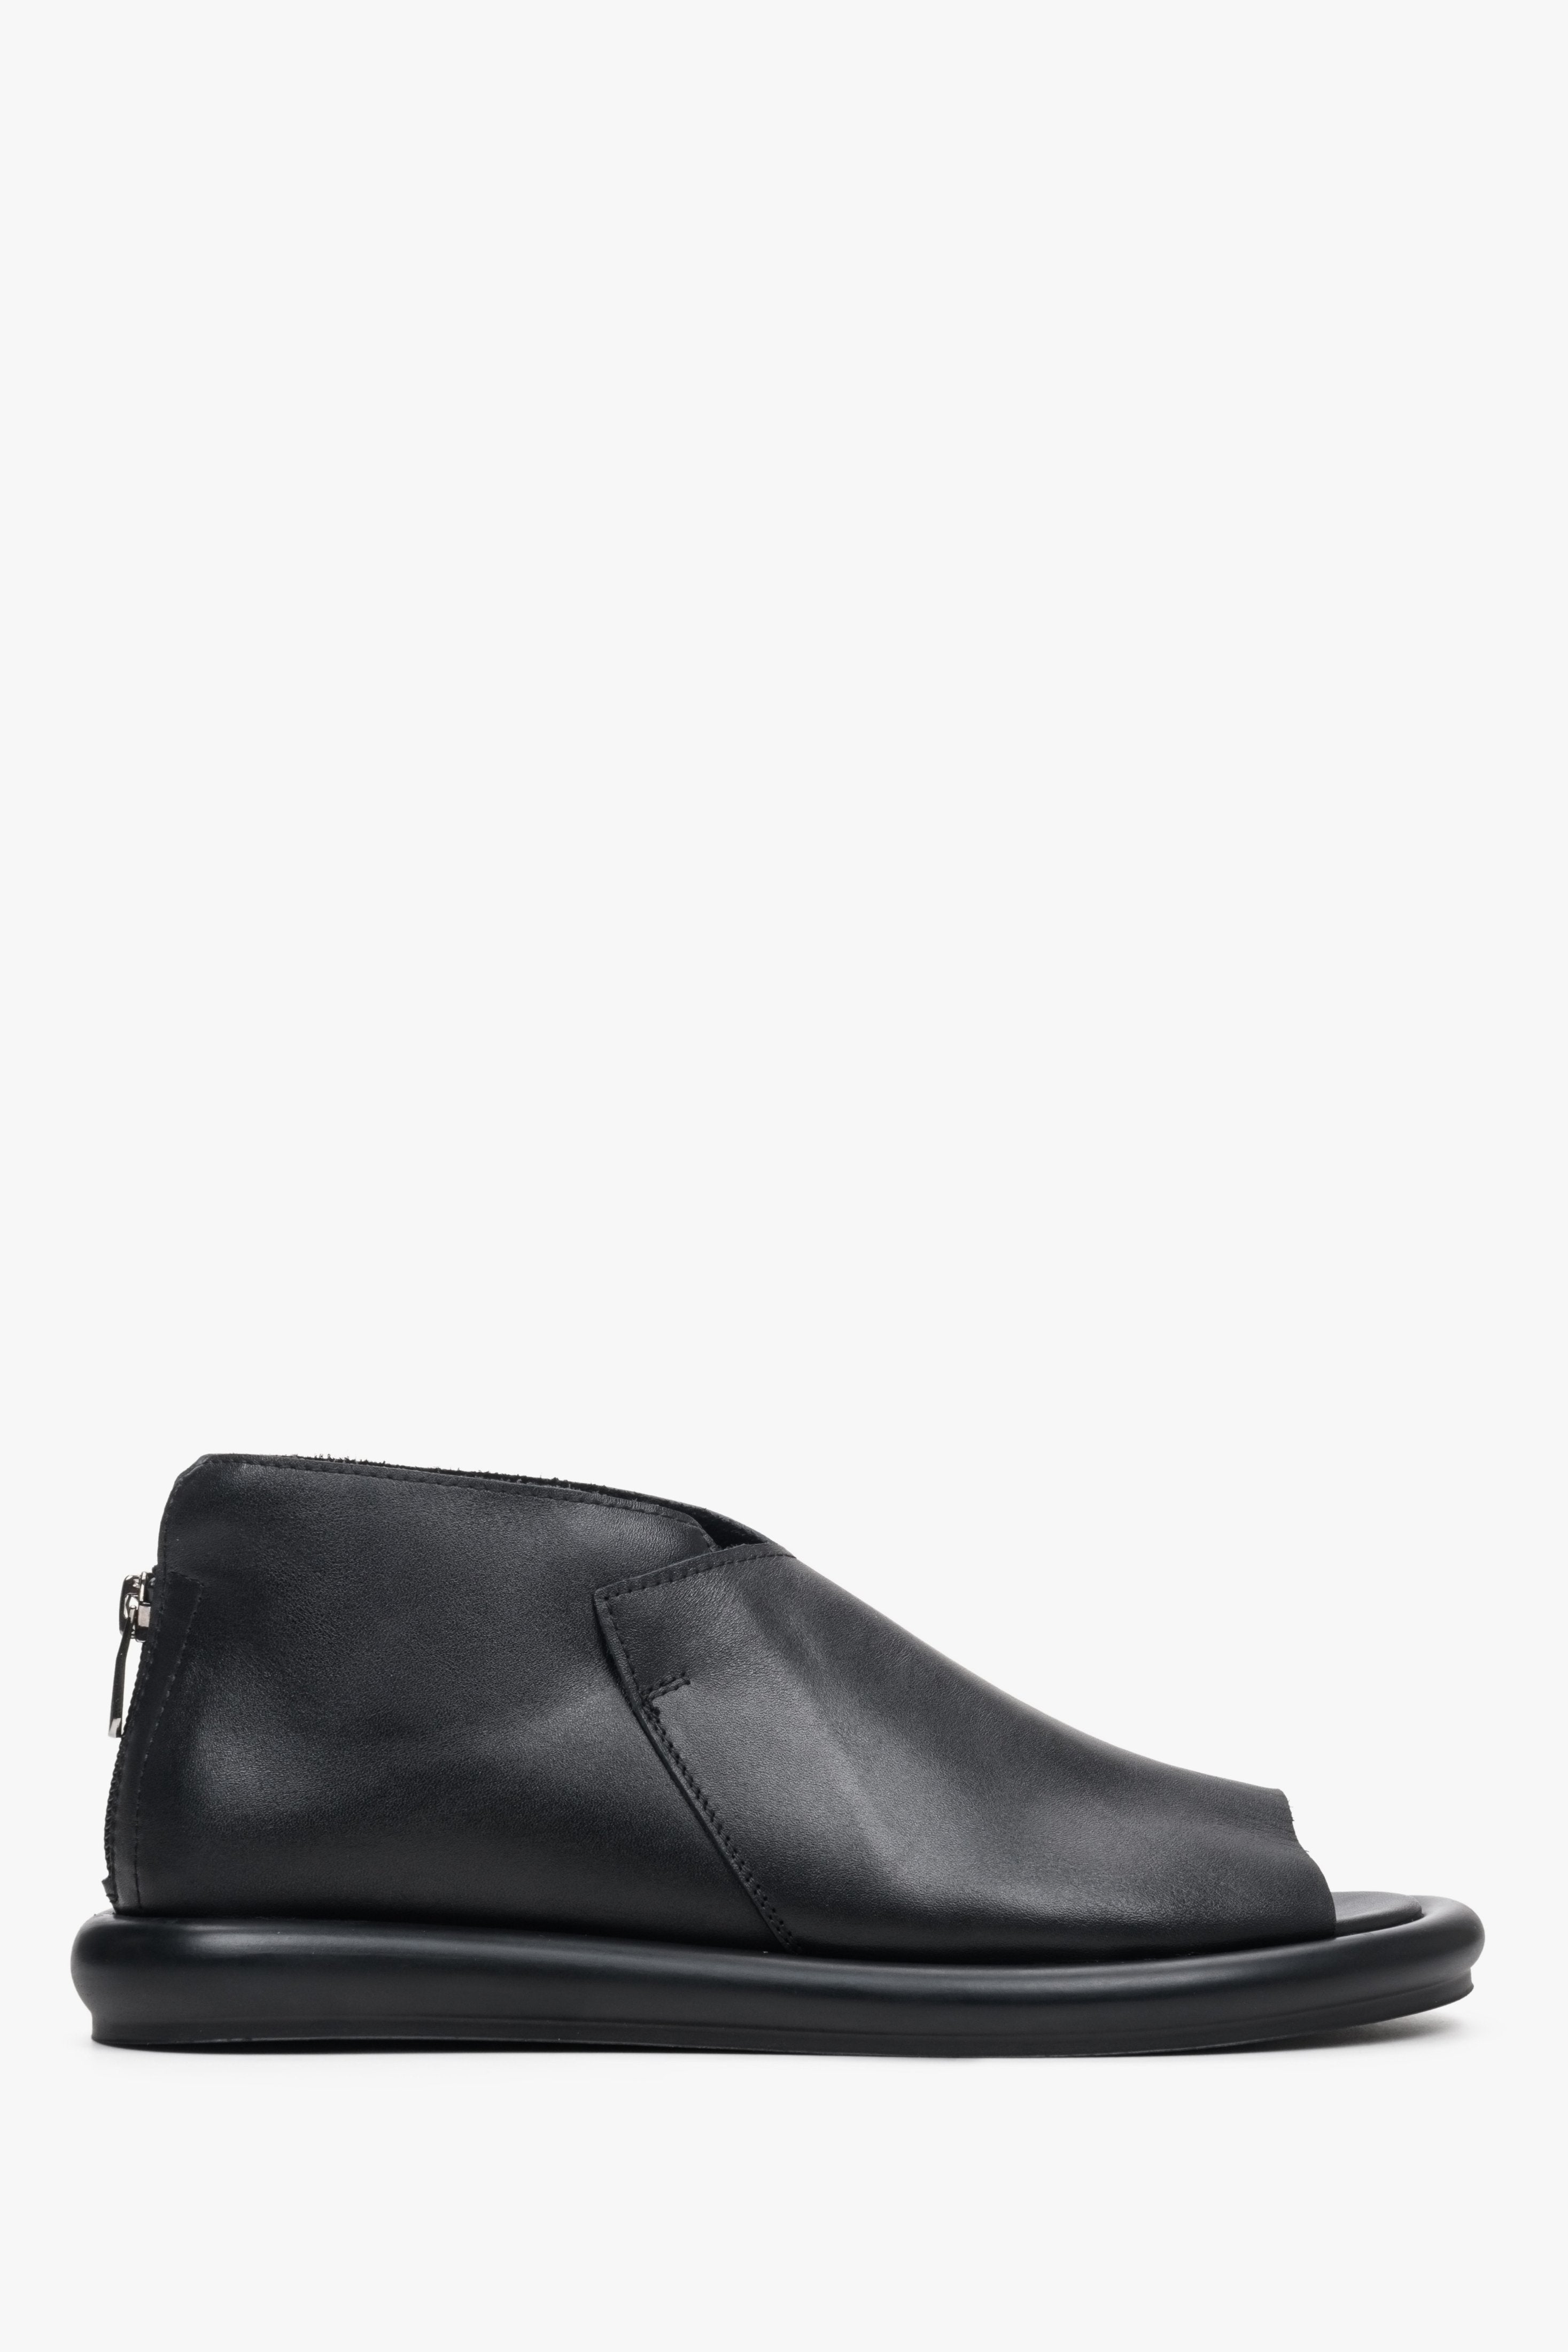 Damskie sandały w kolorze czarnym ze skóry naturalnej z zakrytą piętą Estro - profil butów.